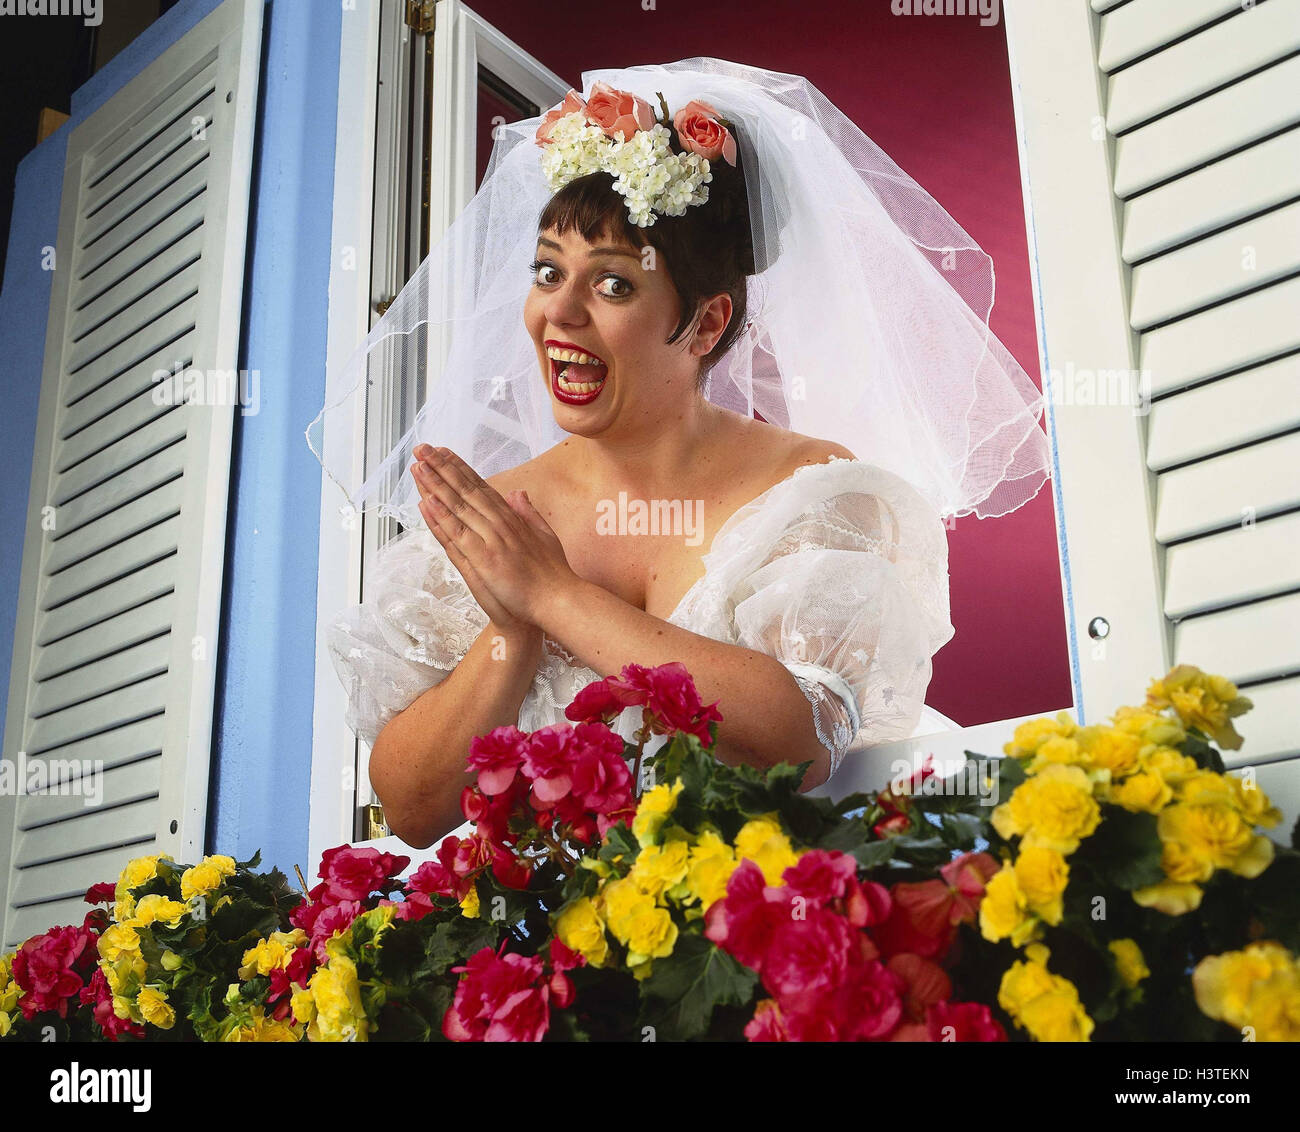 Window, floral decoration, bride, gesture, joy Heavy Weights